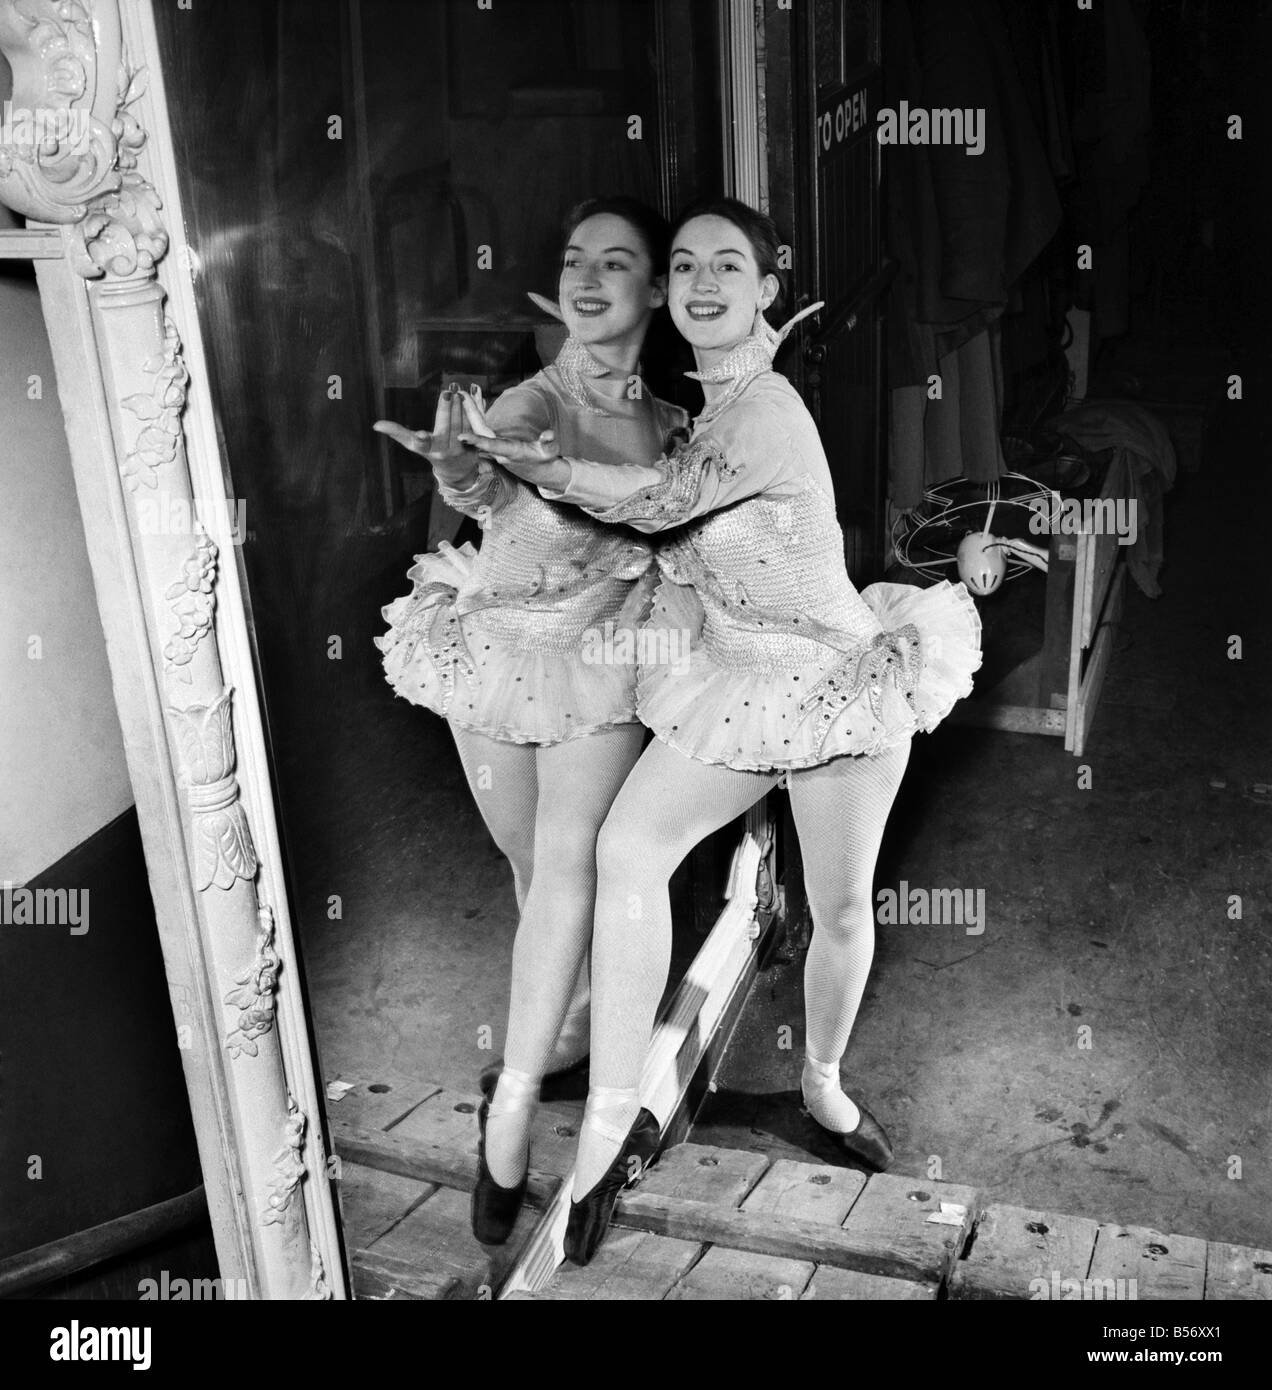 Sie ist auf ihrem eigenen ist es kein Duo, sie sind keine Zwillinge, es ist nur ein wenig 17 Jahre altes Mädchen alles auf eigene Faust. Aber sie hat es bis jetzt sehr gut geschafft. In ihr erstes professionelles Engagement im Theater hat sie einen Job in der Pantomime im London Palladium geschafft. Sie hat nur die Sadlers Wells Ballet School verließ, sie ein Stipendium von der Royal Academy of Dancing gewann. Ihr Name ist Judy Monitz von Wembley, London. Dezember 1953 D7645-002 Stockfoto